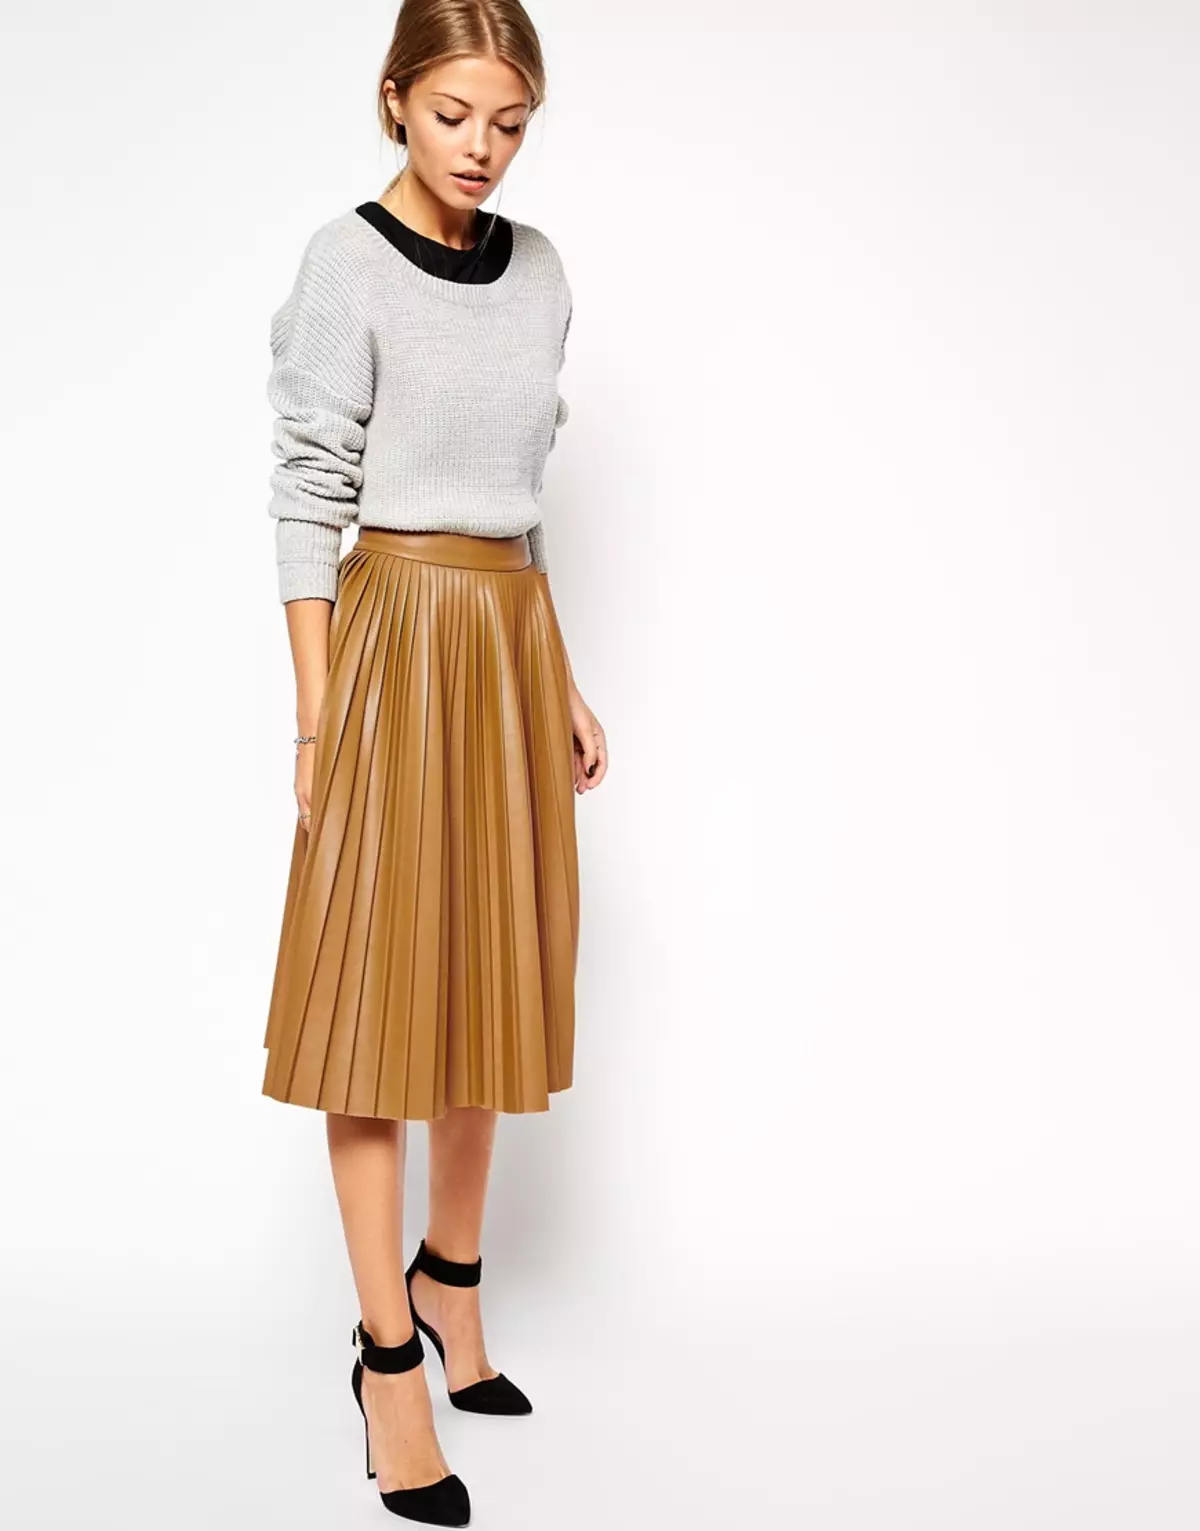 Placs Skirt Kulit: Apa yang perlu dipakai Rok Eco-Piece Pleated? Imej dengan skirt kulit tiruan hitam dan coklat 800_28